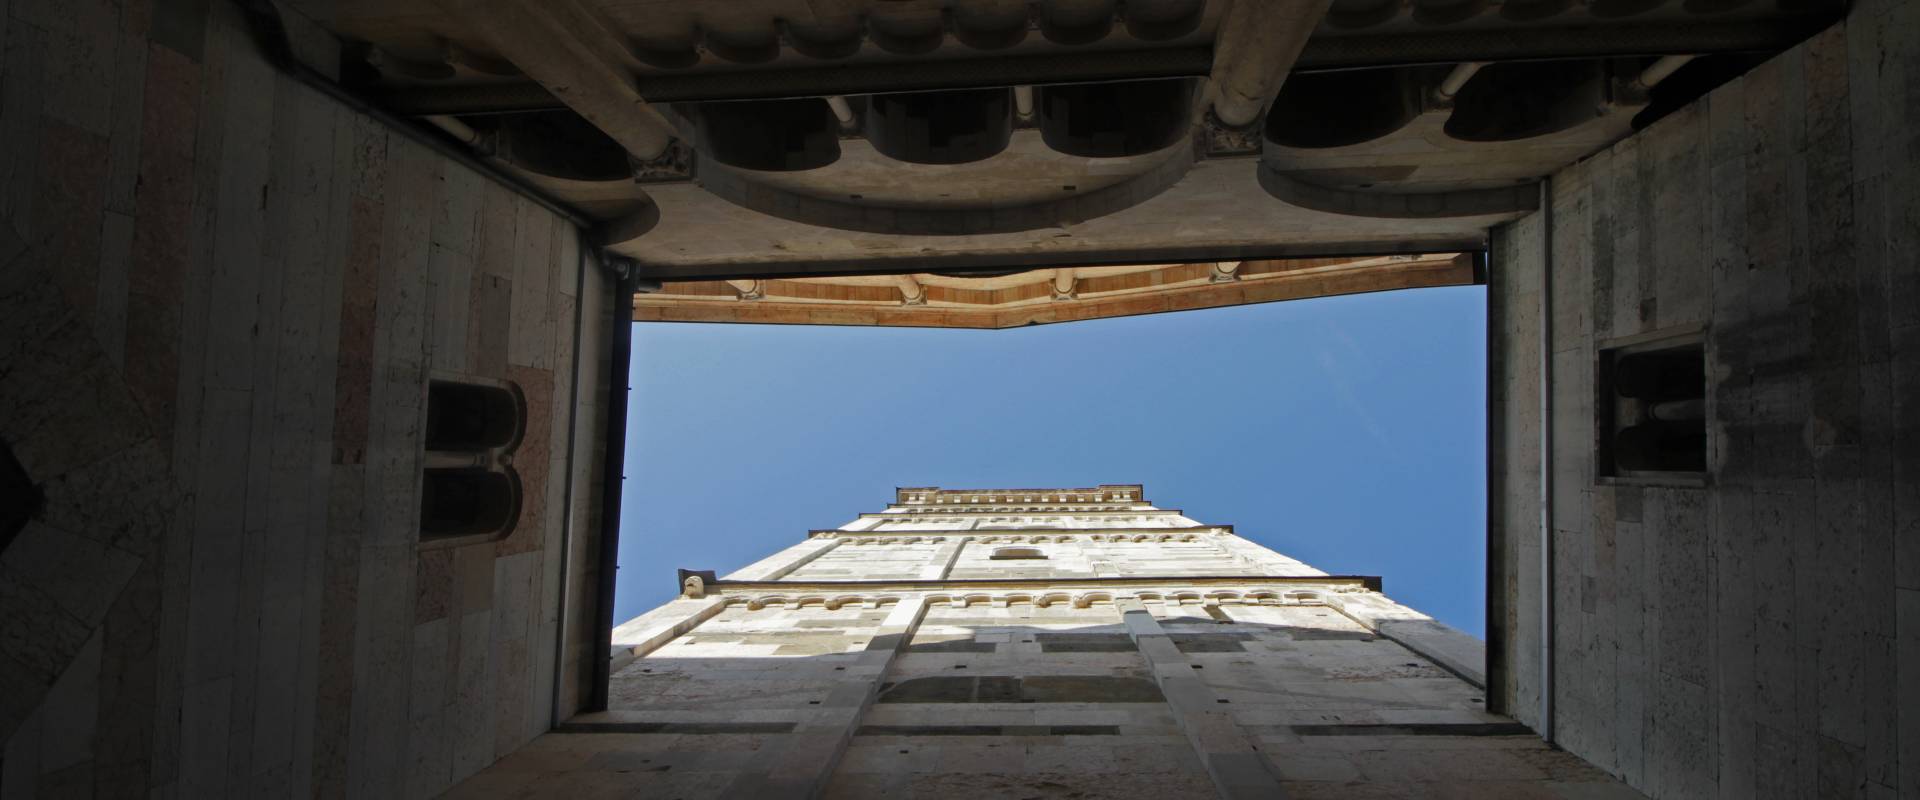 Torre Ghirlandina e Duomo di Modena 02 foto di Francesco Morelli